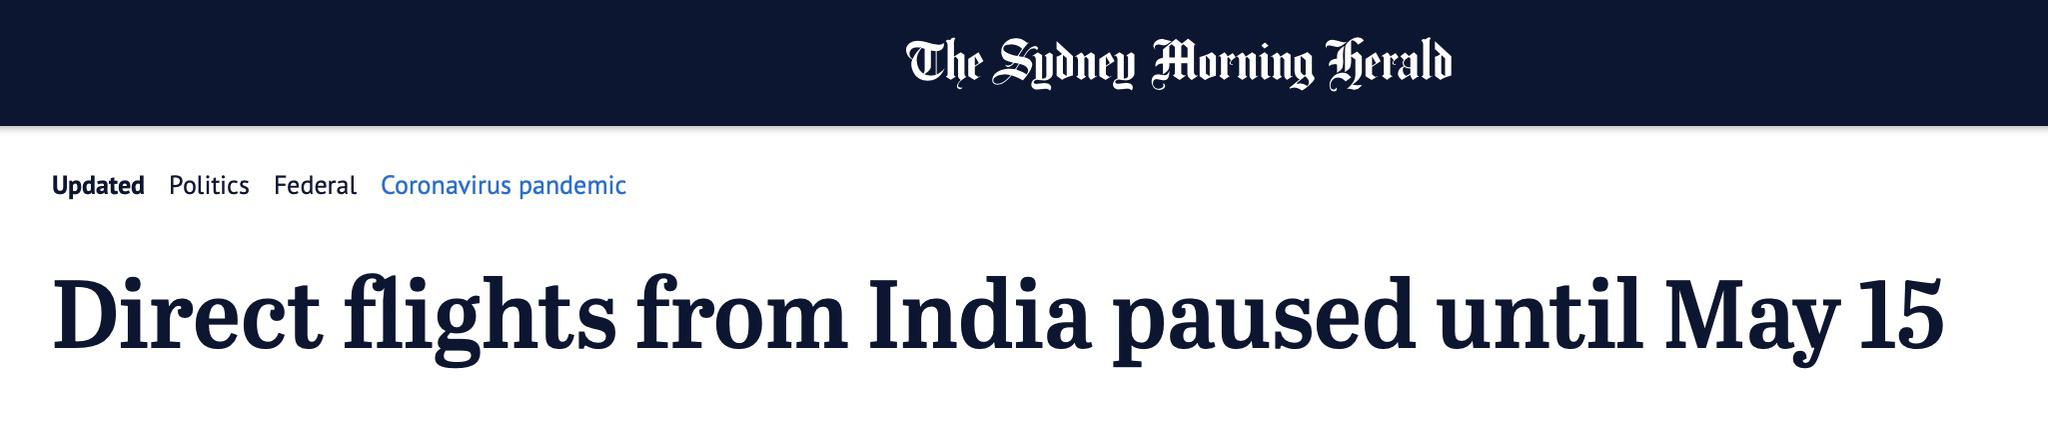 澳大利亚将在未来三周停飞来自印度航班，同时向印送去抗疫物资